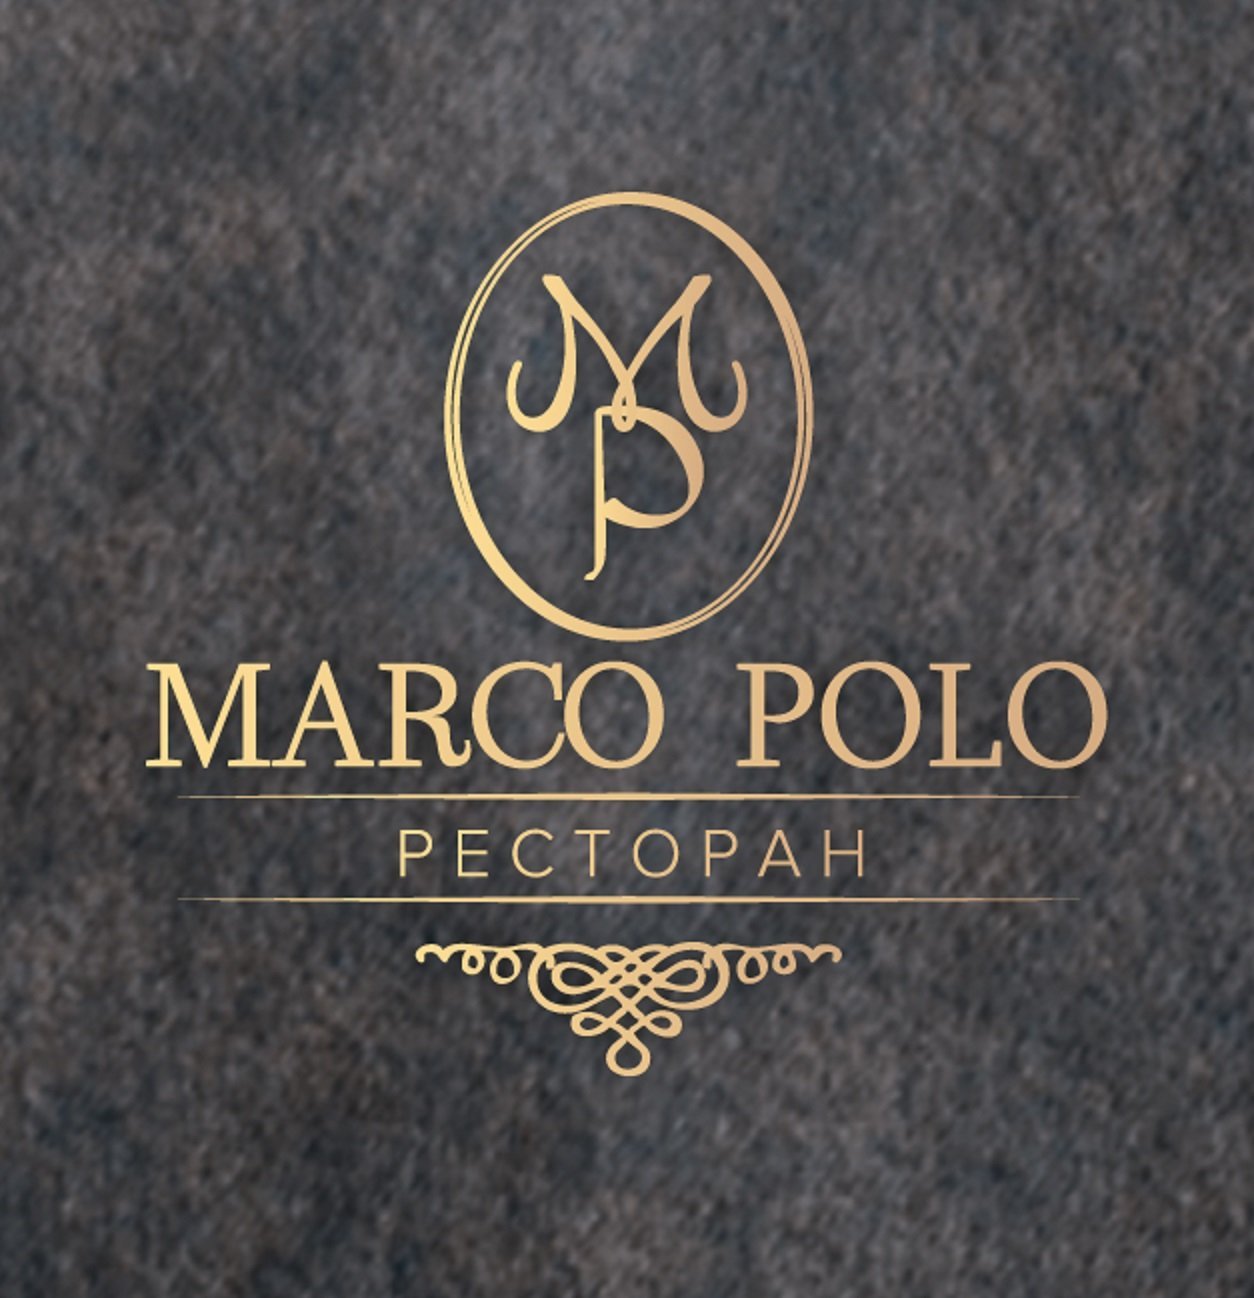 Меню ресторана марко поло. Марко поло Элиста ресторан. Марко поло логотип. Ресторан Марсо поло логотип. Marco Polo кафе.